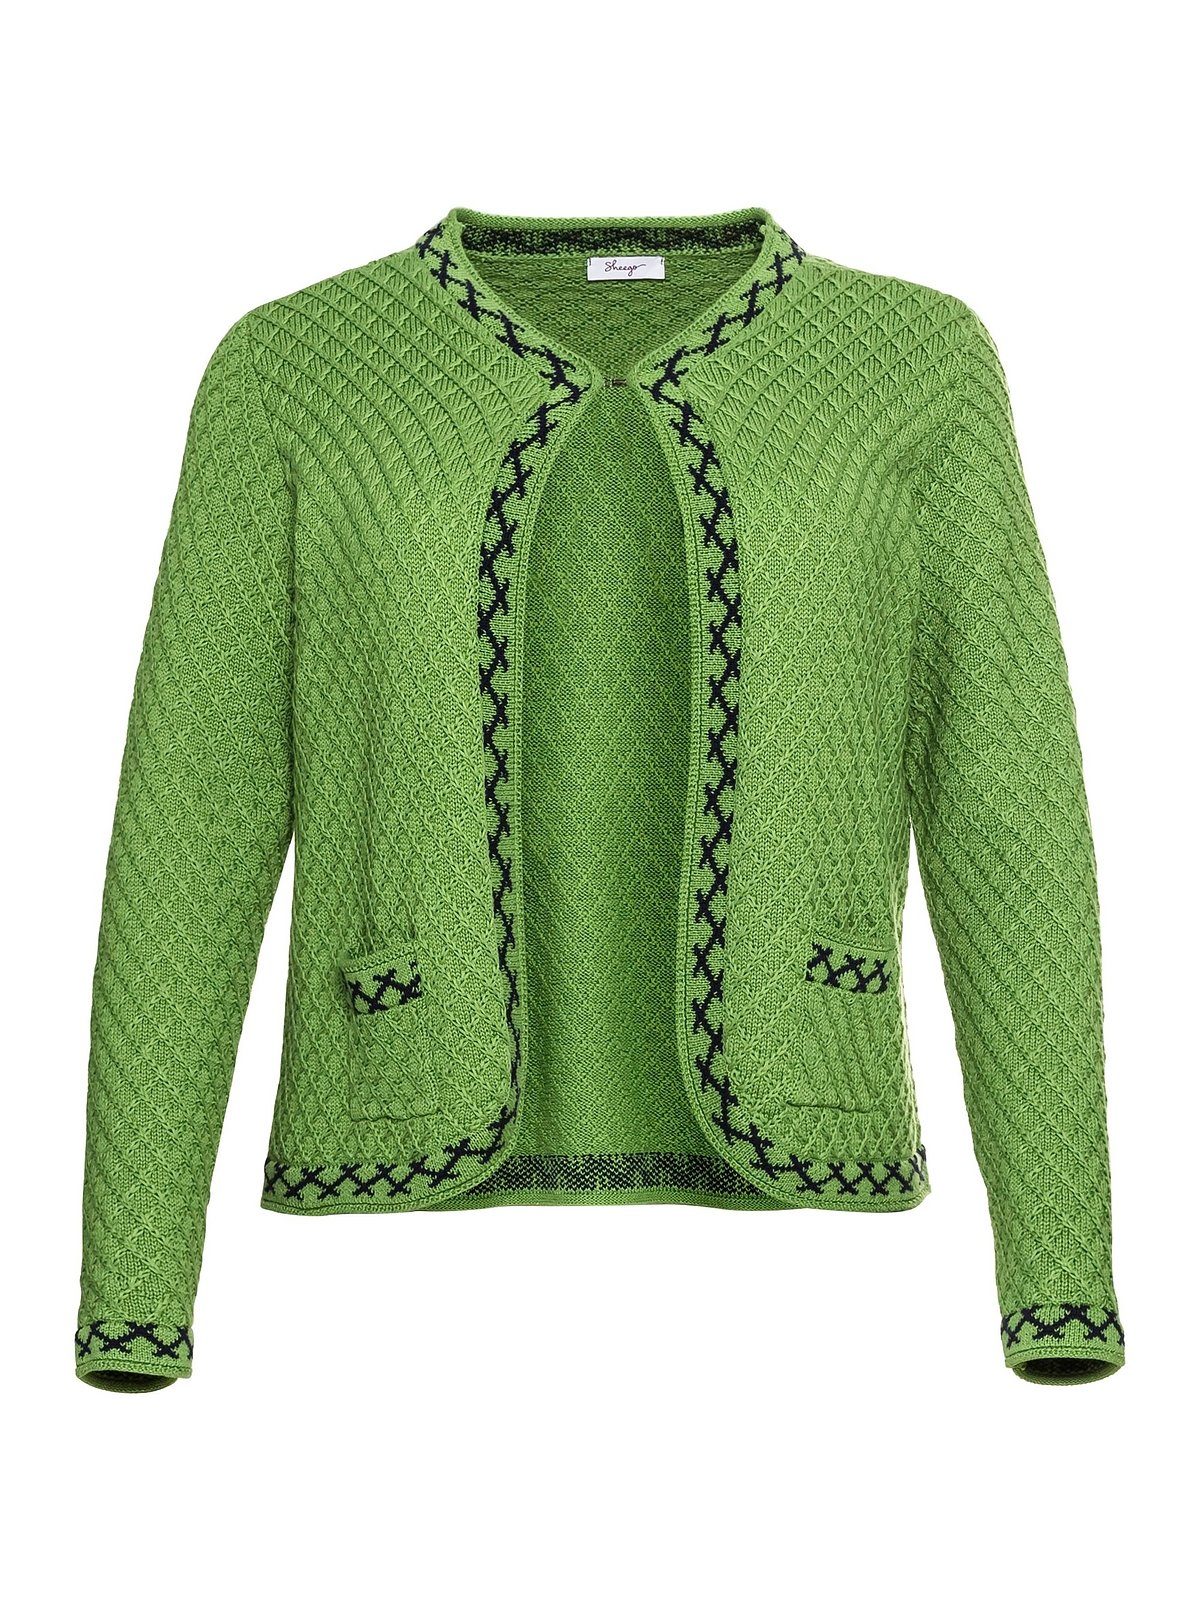 Sheego Strickjacke Große Größen im mit Zierborte grün Trachten-Look